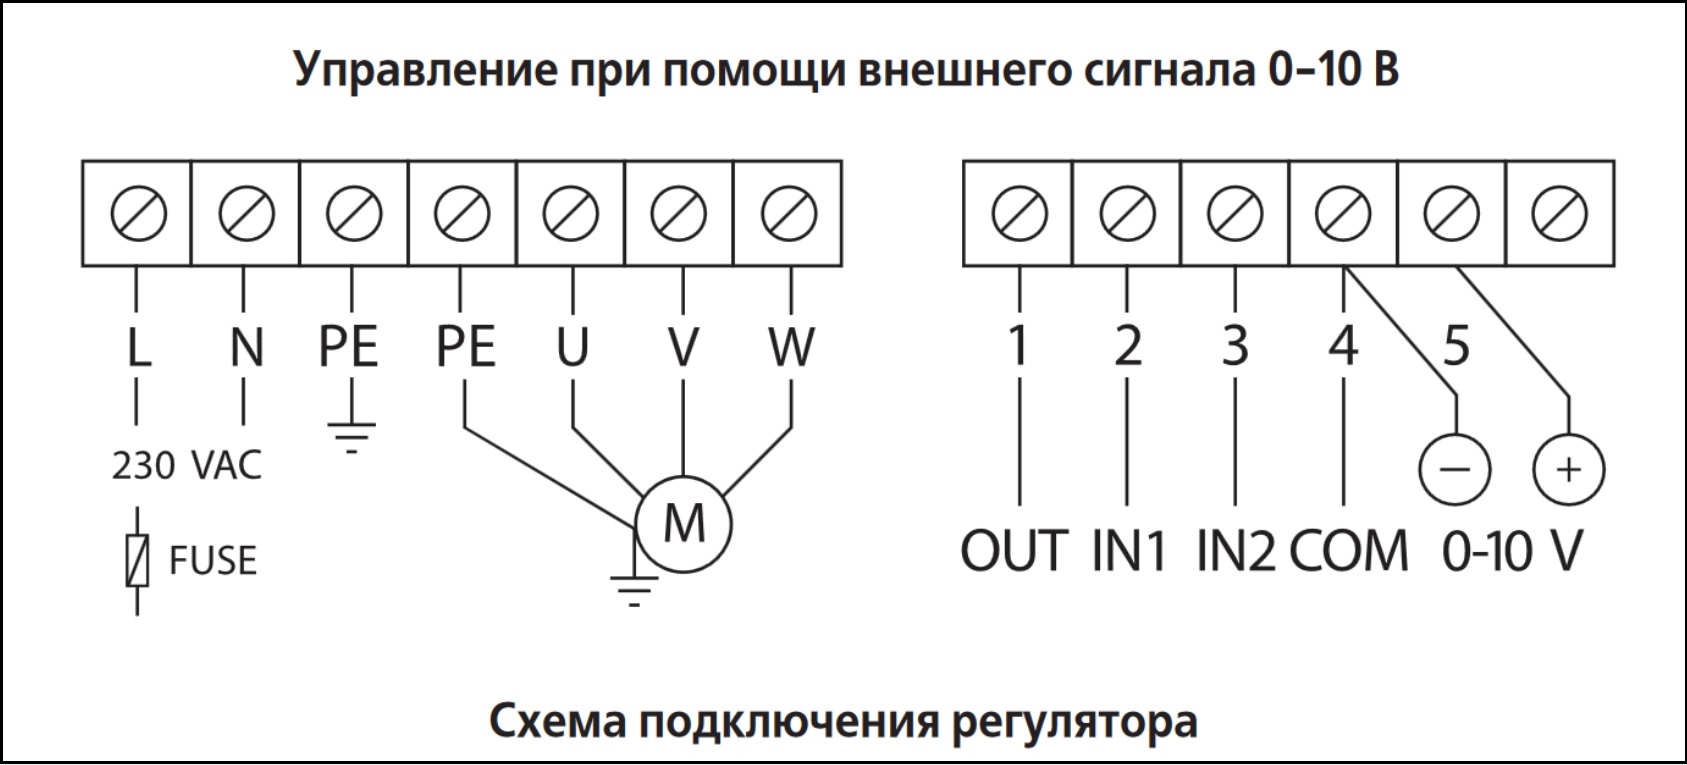 Схема подключения регулятора скорости ВЕНТС ВФЕД-1500-ТА